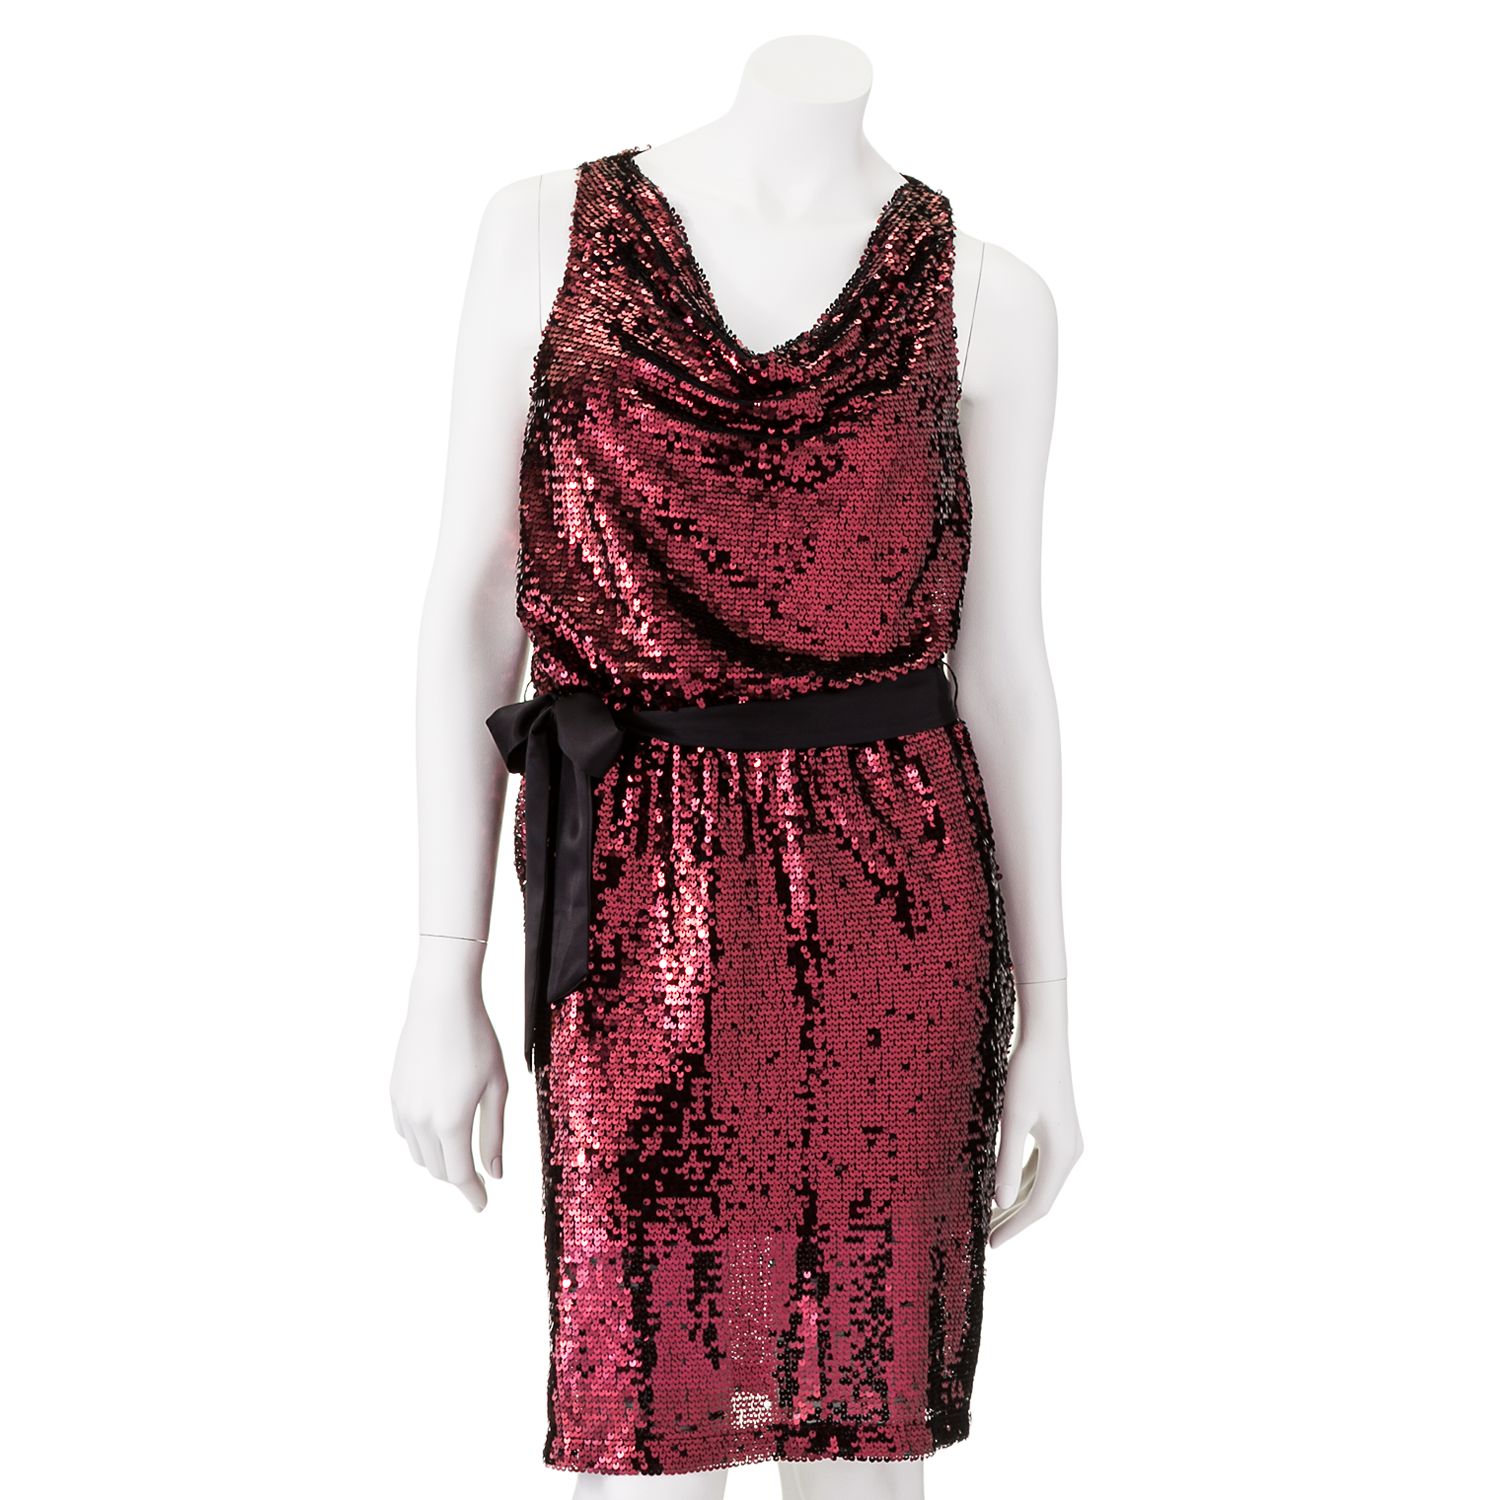 wallis leopard print dress